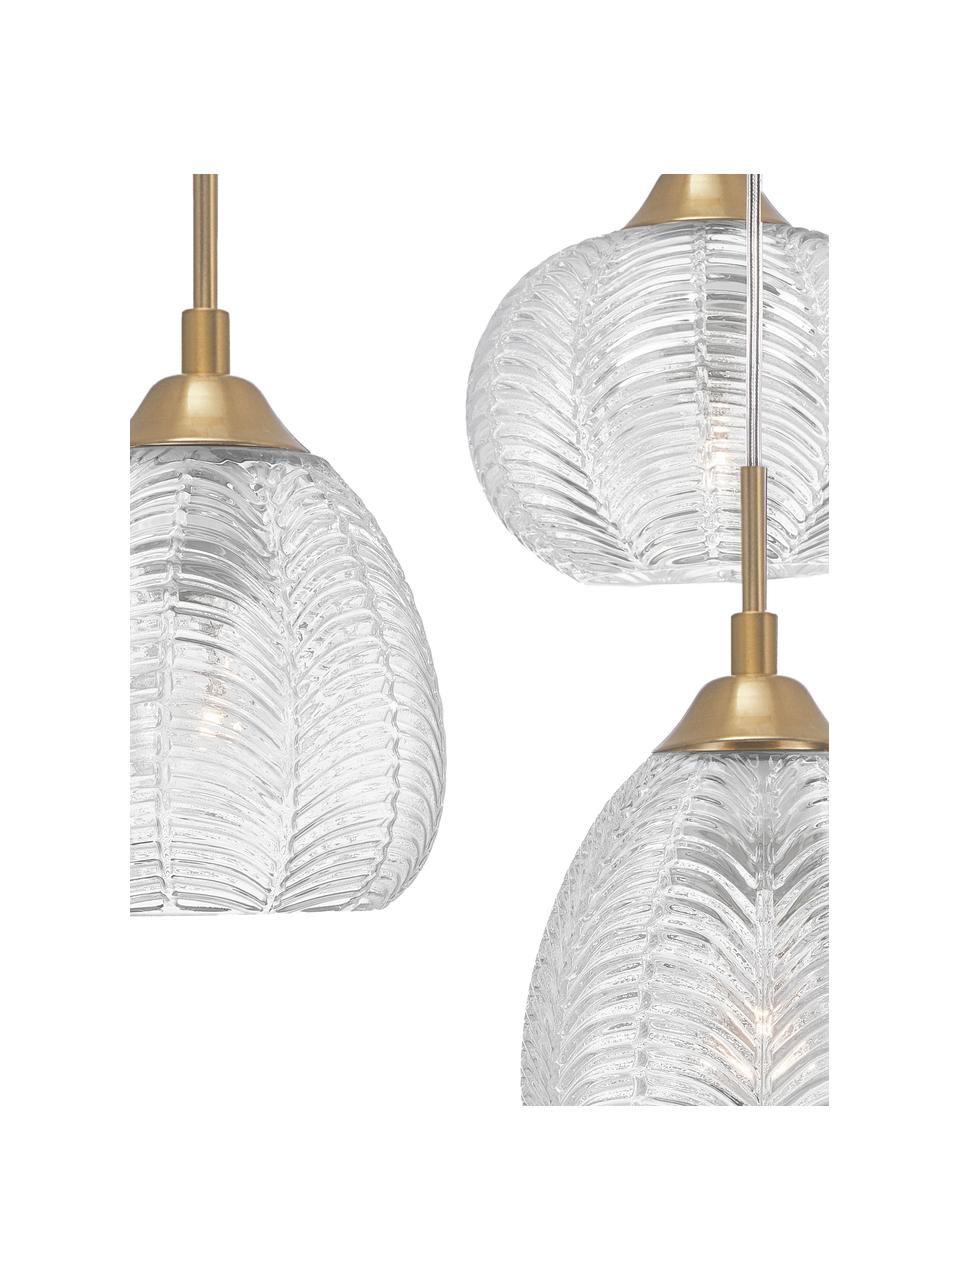 Cluster hanglamp Vario van gesatineerd glas, Lampenkap: gesatineerd glas, Baldakijn: gecoat aluminium, Messingkleurig, Ø 39 x H 24 cm